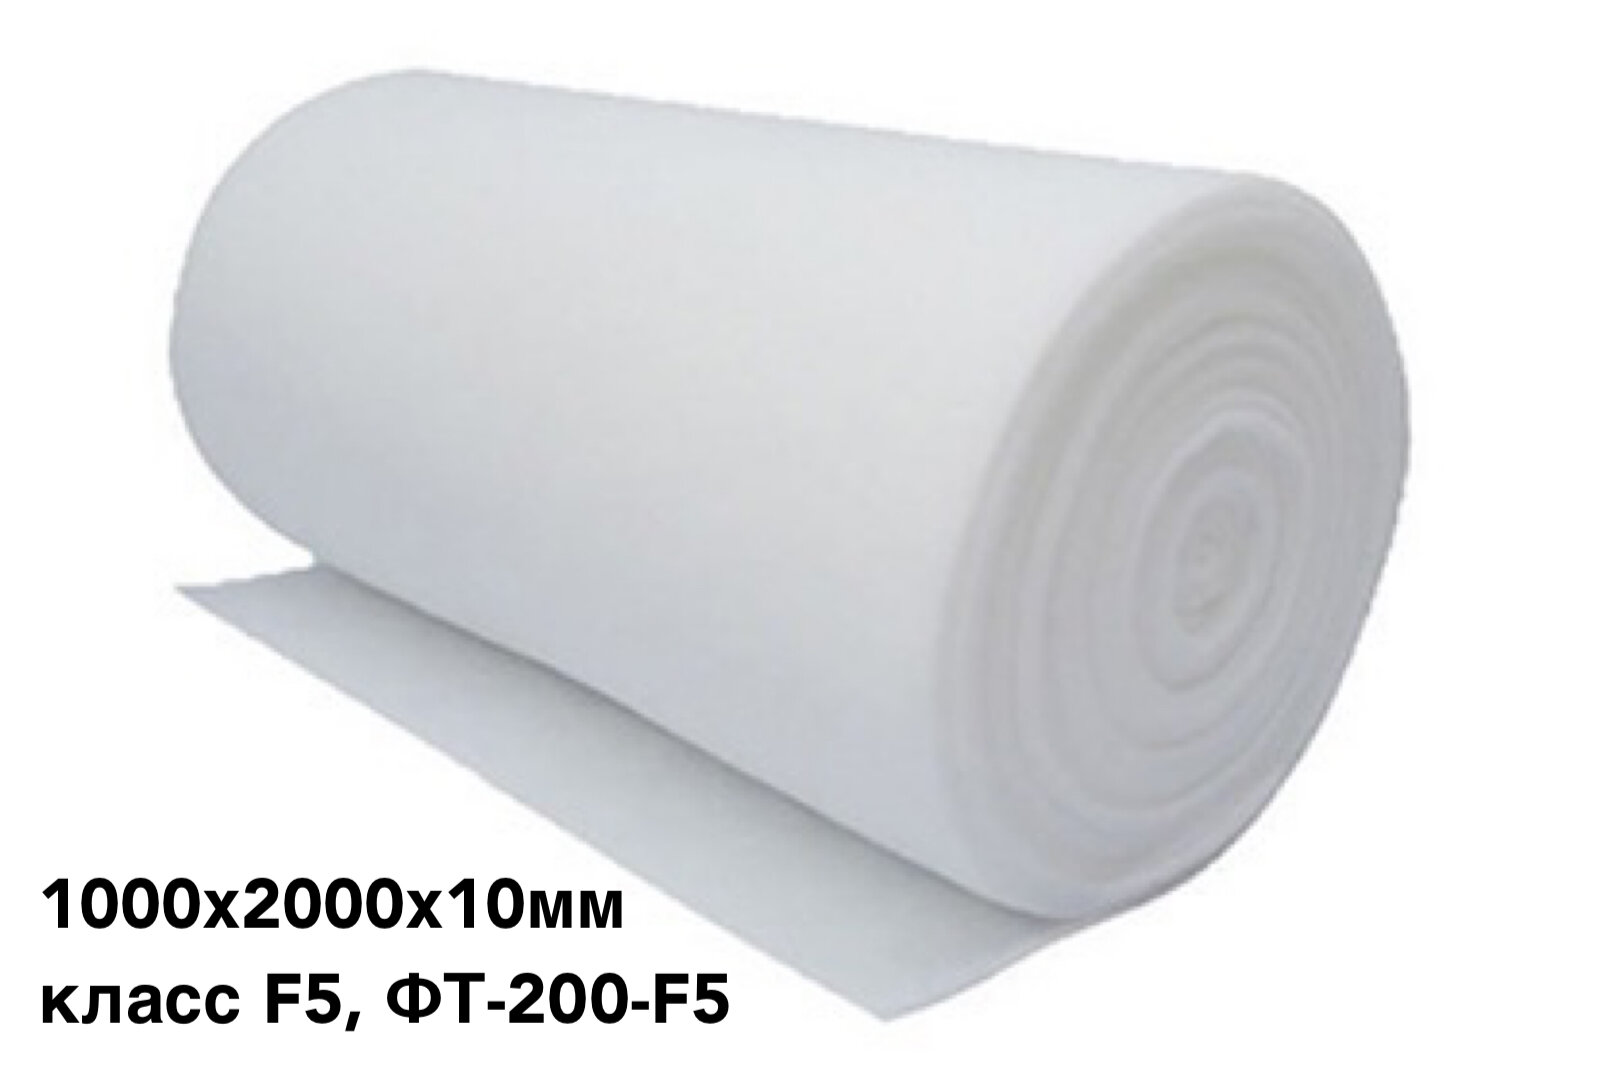 Фильтрующий материал для вентиляции, фильтровальное полотно 1000х2000х10мм, класс F5, ФТ-200-F5